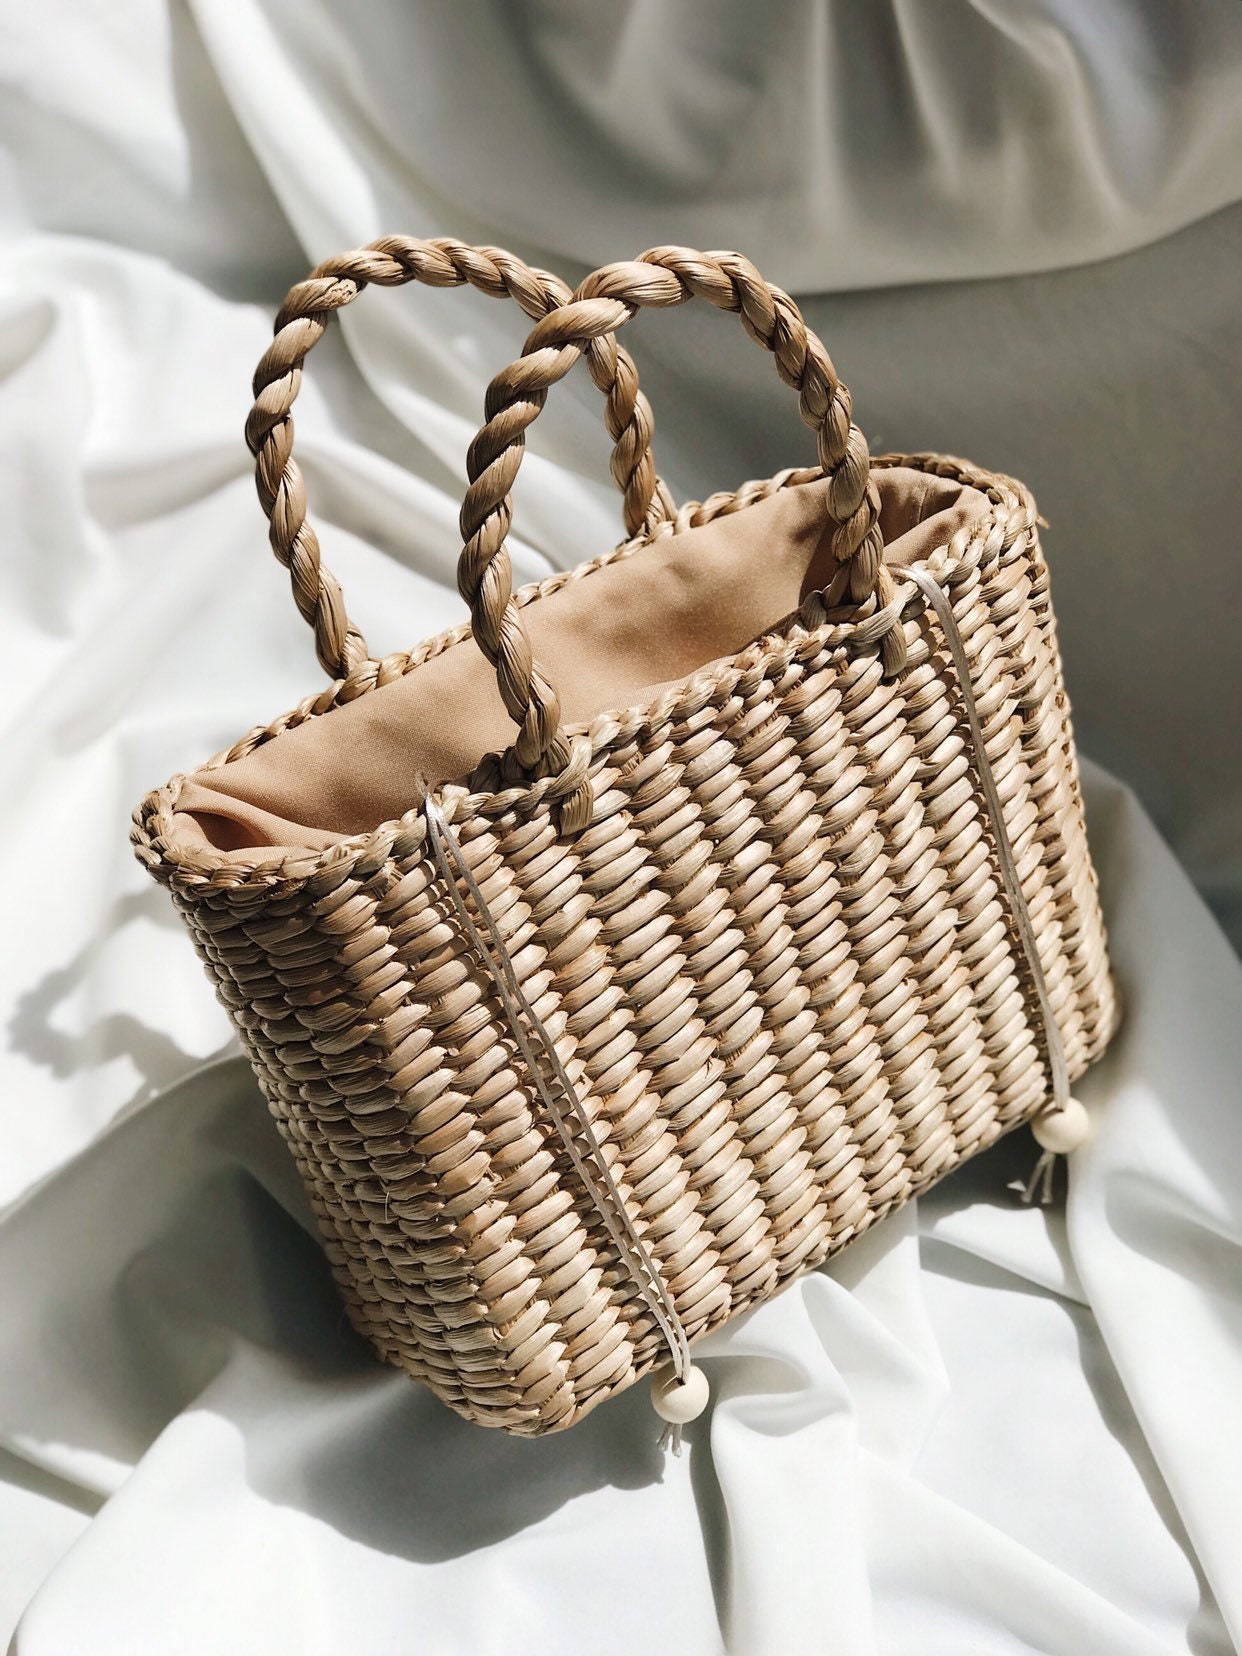 Handmade Summer Bag Woven Straw Tote Handbag | Etsy